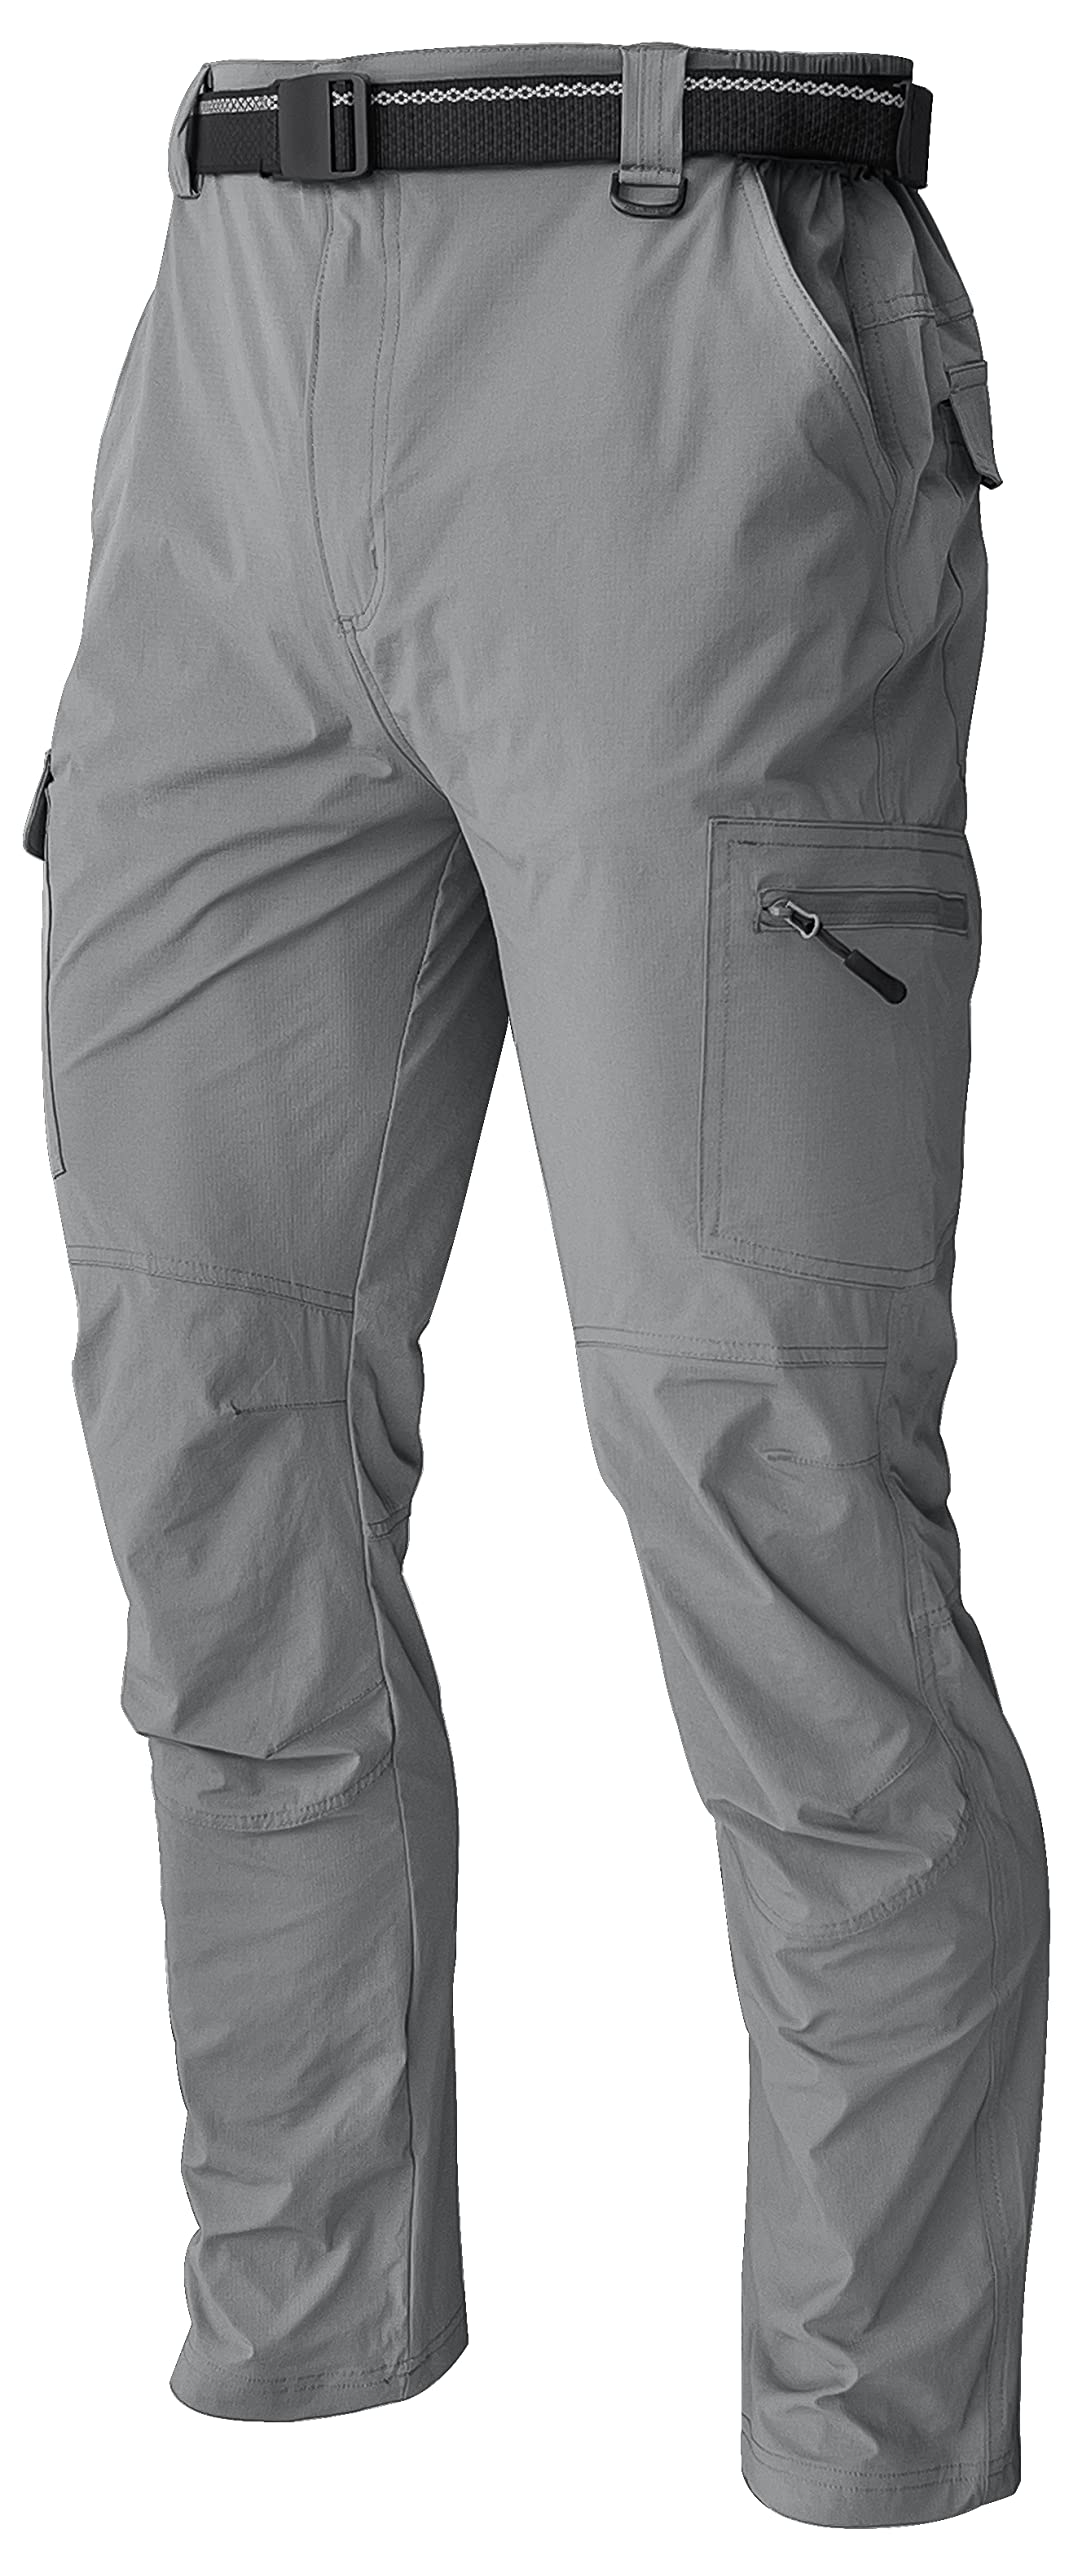 Men's Cargo Work Hiking Pants Lightweight Water Resistant Quick